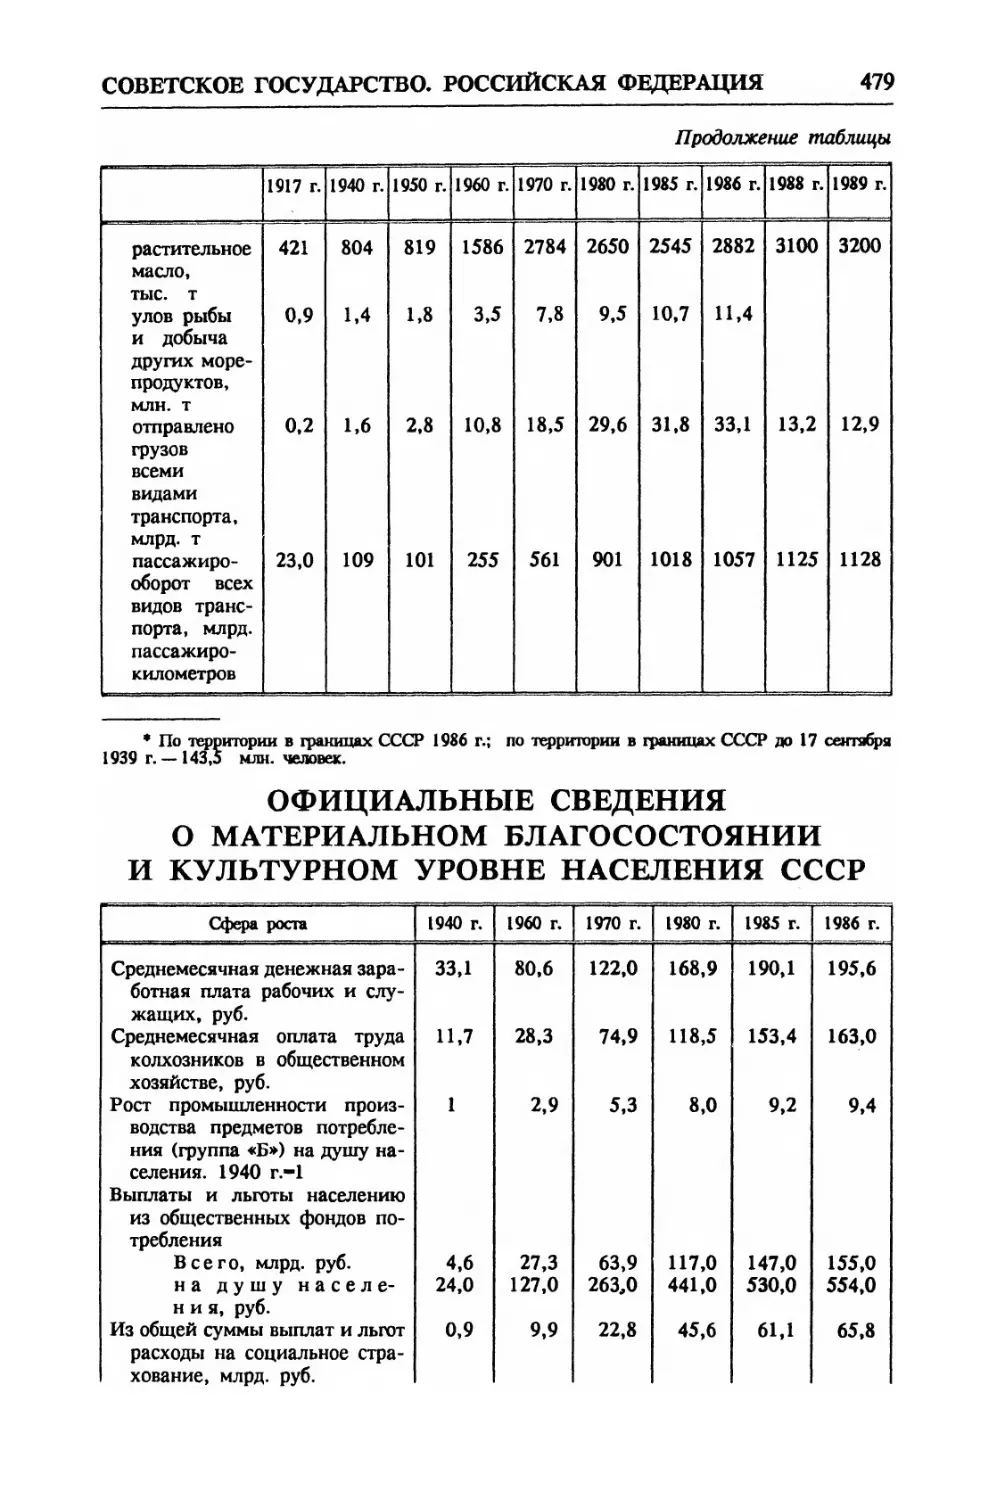 Официальные сведения о материальном благосостоянии и культурном уровне населения СССР